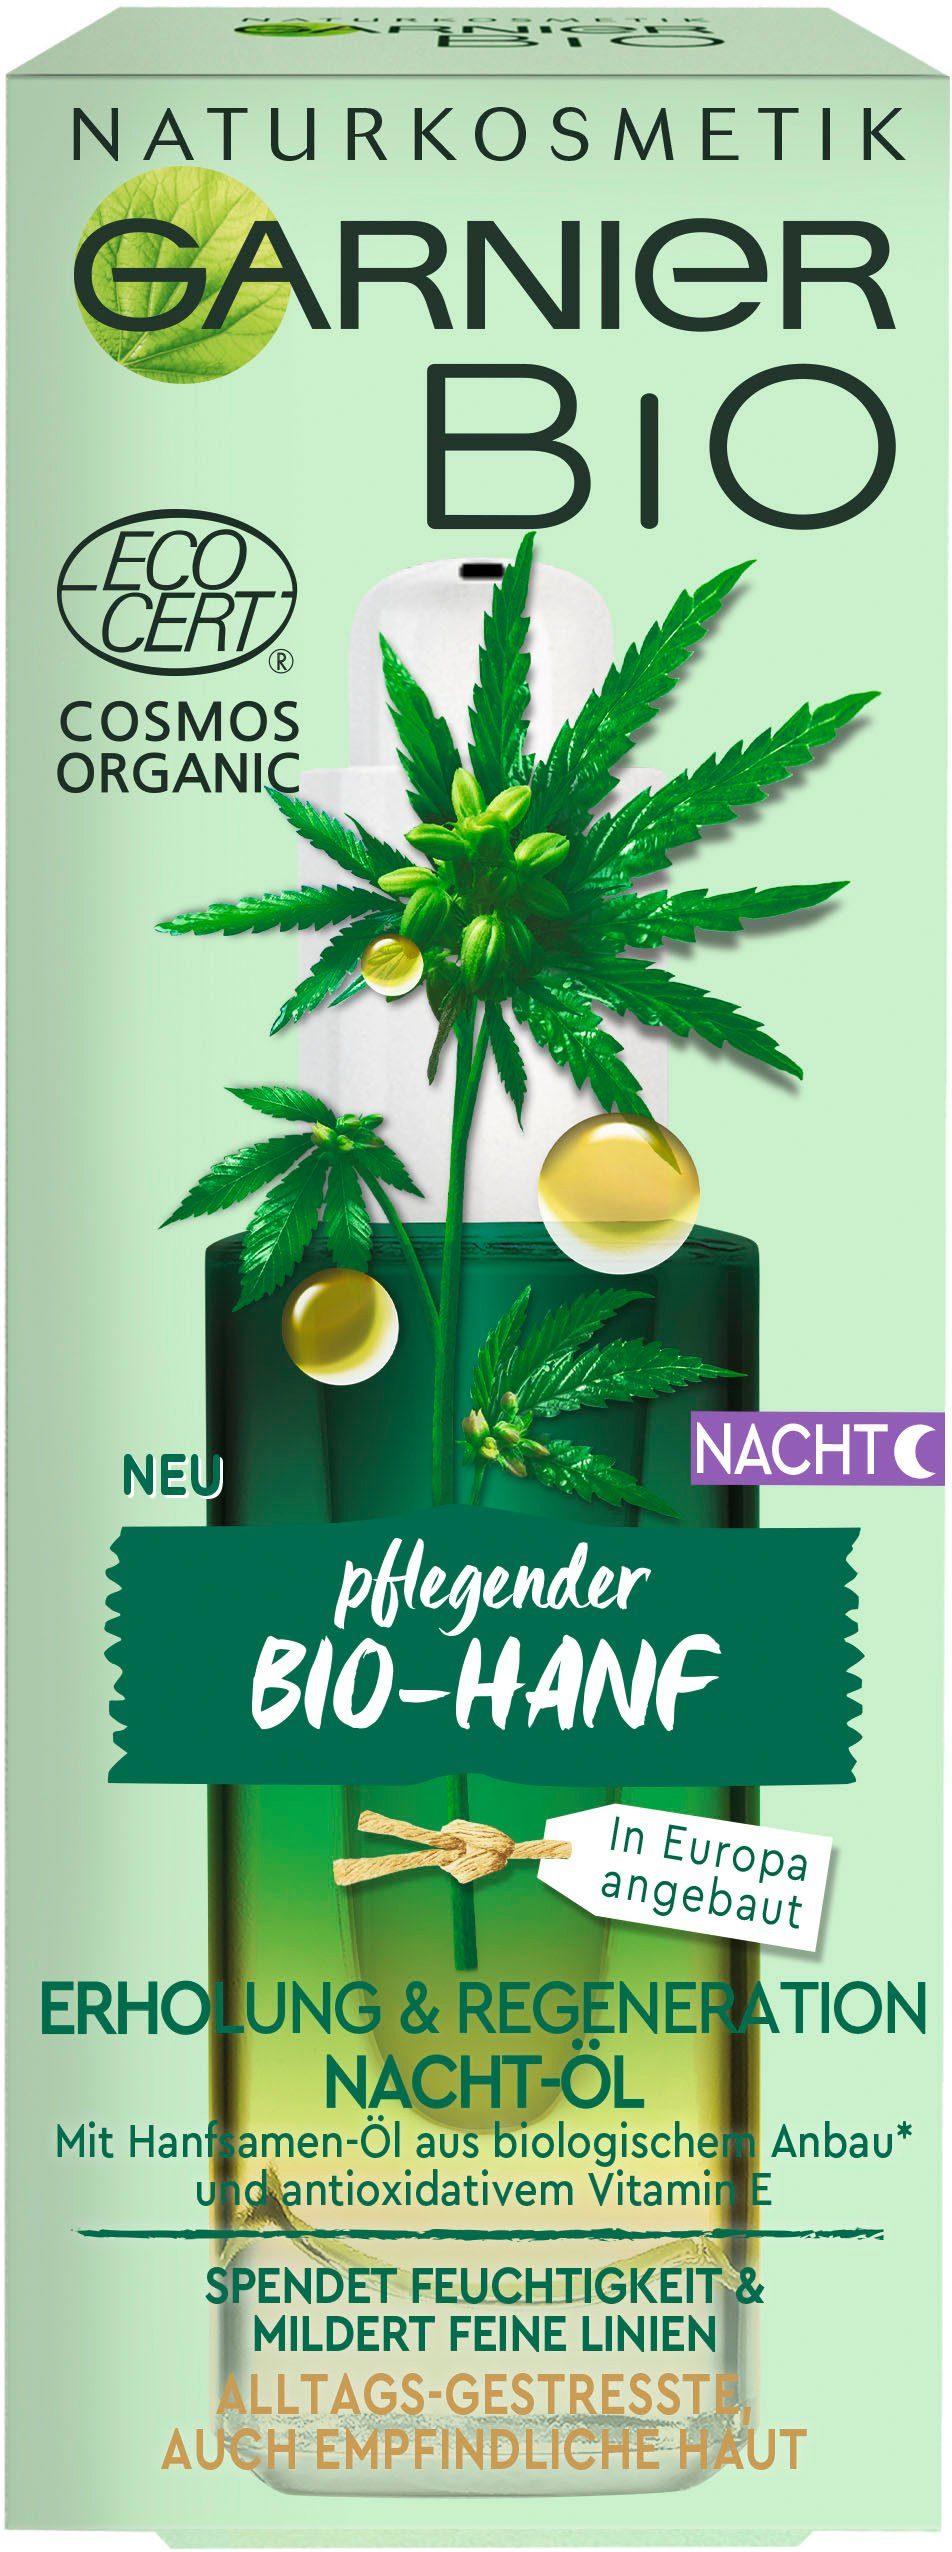 & Nacht-Öl, Naturkosmetik GARNIER Erholung Regeneration Gesichtsöl Bio-Hanf